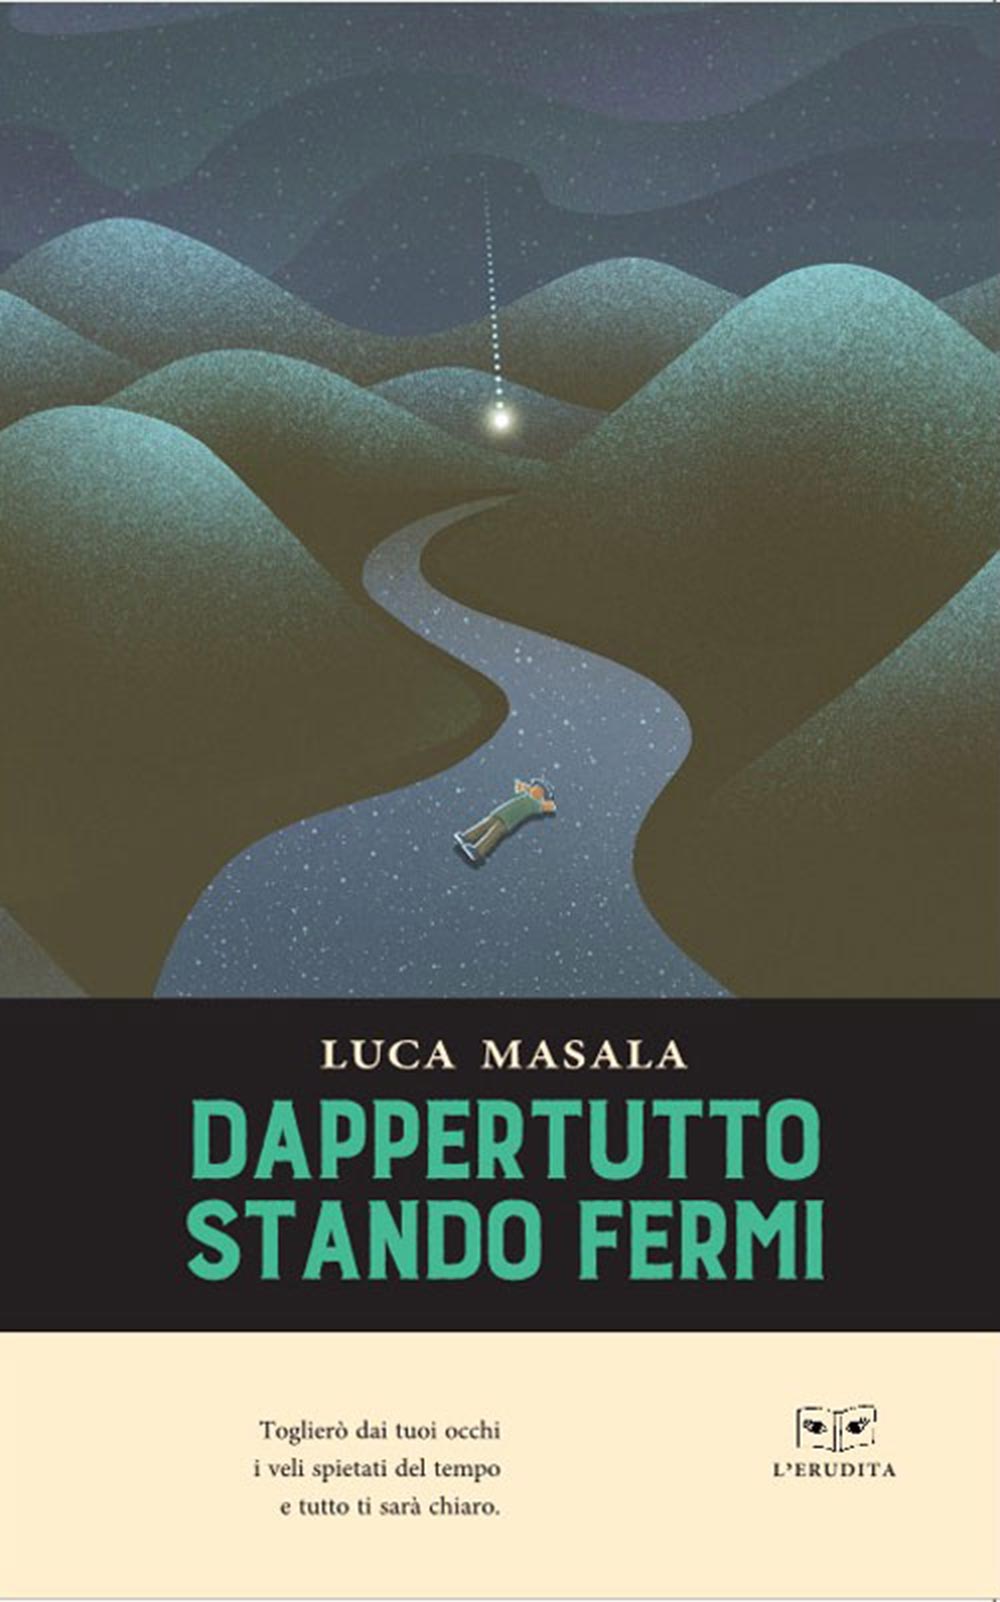 È disponibile in libreria e negli store digitali “Dappertutto stando fermi” (L’Erudita) il libro di poesie di Luca Masala